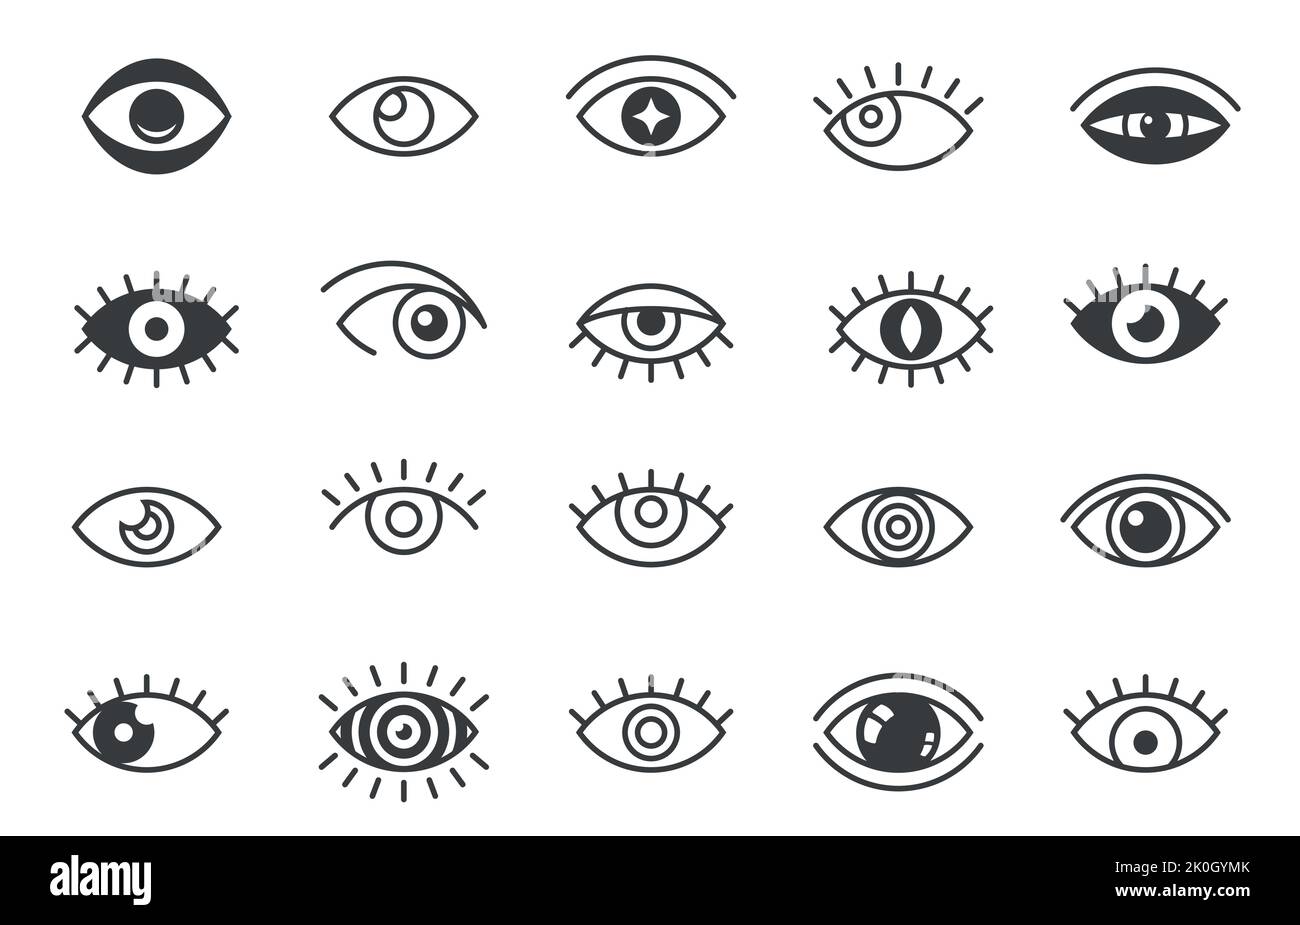 Symbole für offene Augen. Skizzieren menschliche Augen optische Symbole, Augenball Wimpern lineare Zeichen, Vision Gesundheit Augenheilkunde Konzept. Vektor-isolierter Satz Stock Vektor